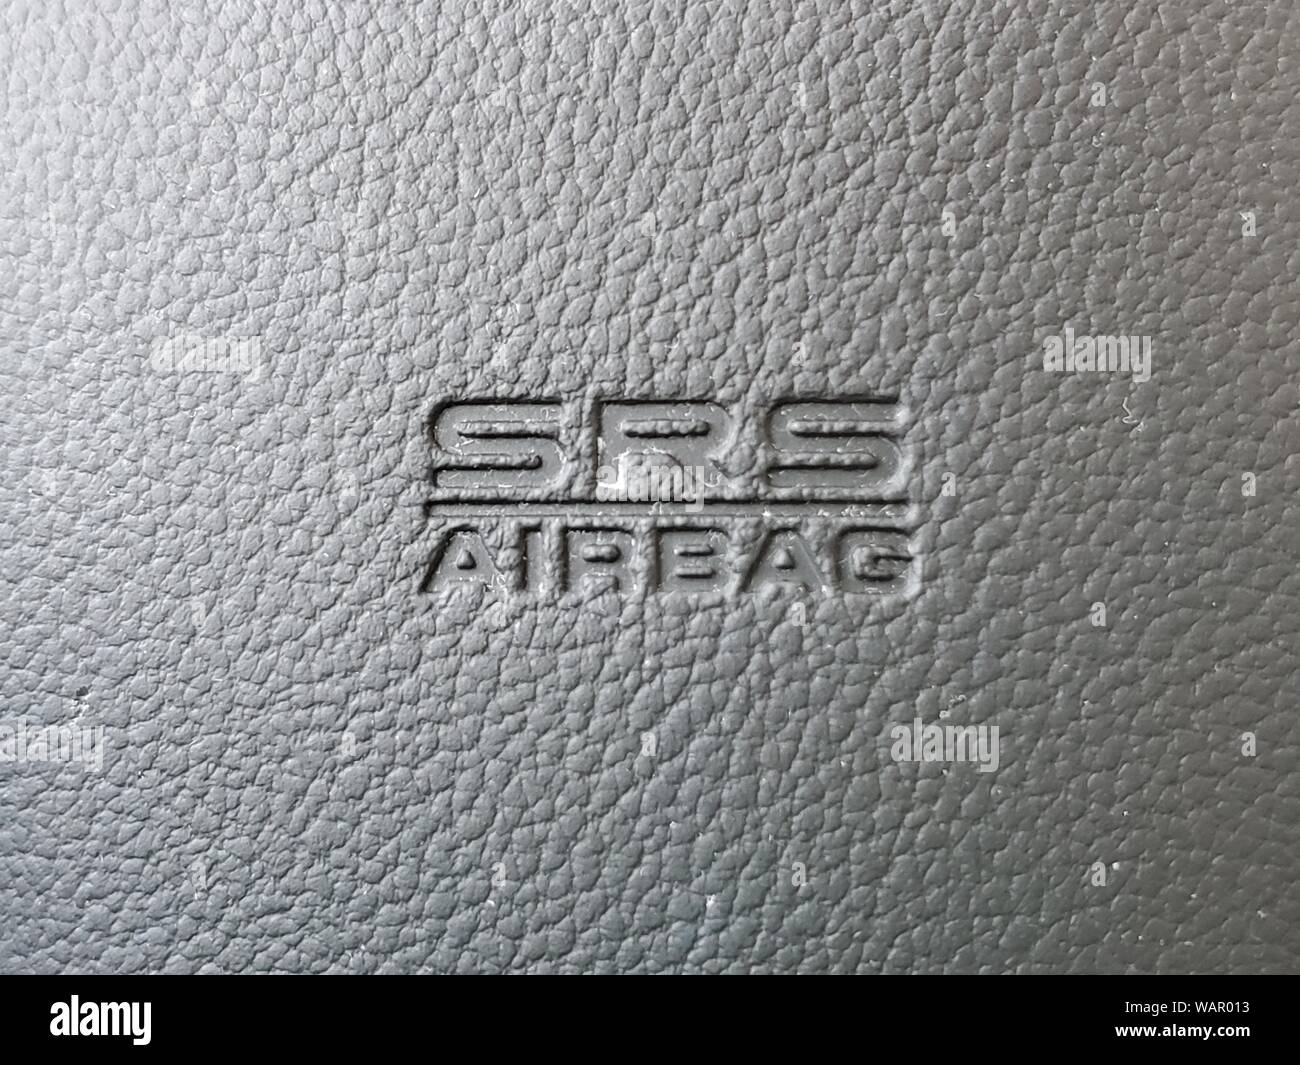 Close-up Logo für SRS AIRBAG oder zusätzlichen Rückhaltesystems Airbag, am Armaturenbrett, 21. August 2019. () Stockfoto